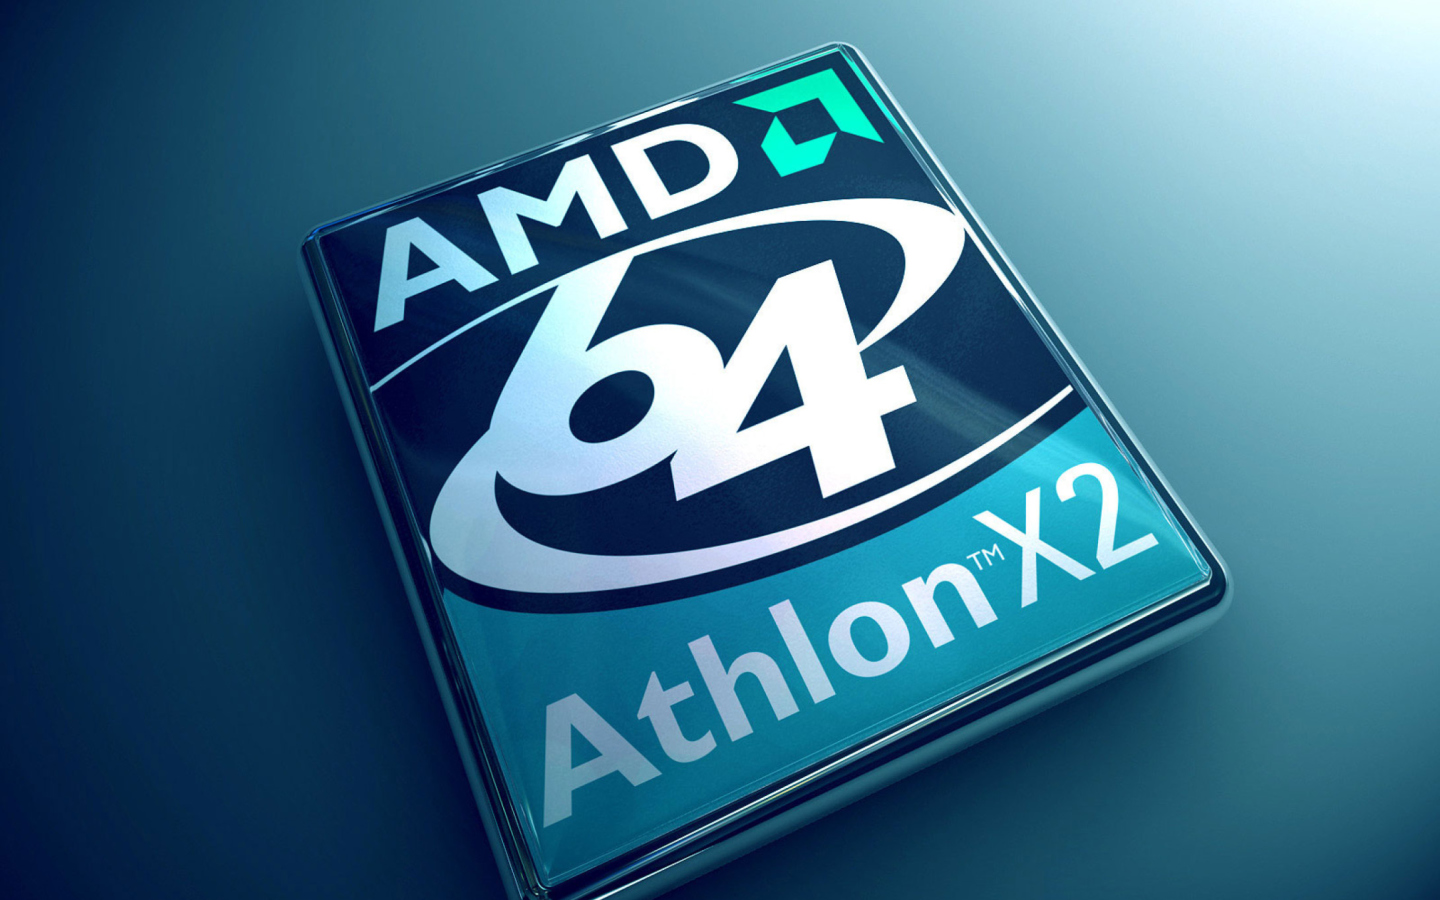 Sfondi AMD Athlon 64 X2 1440x900